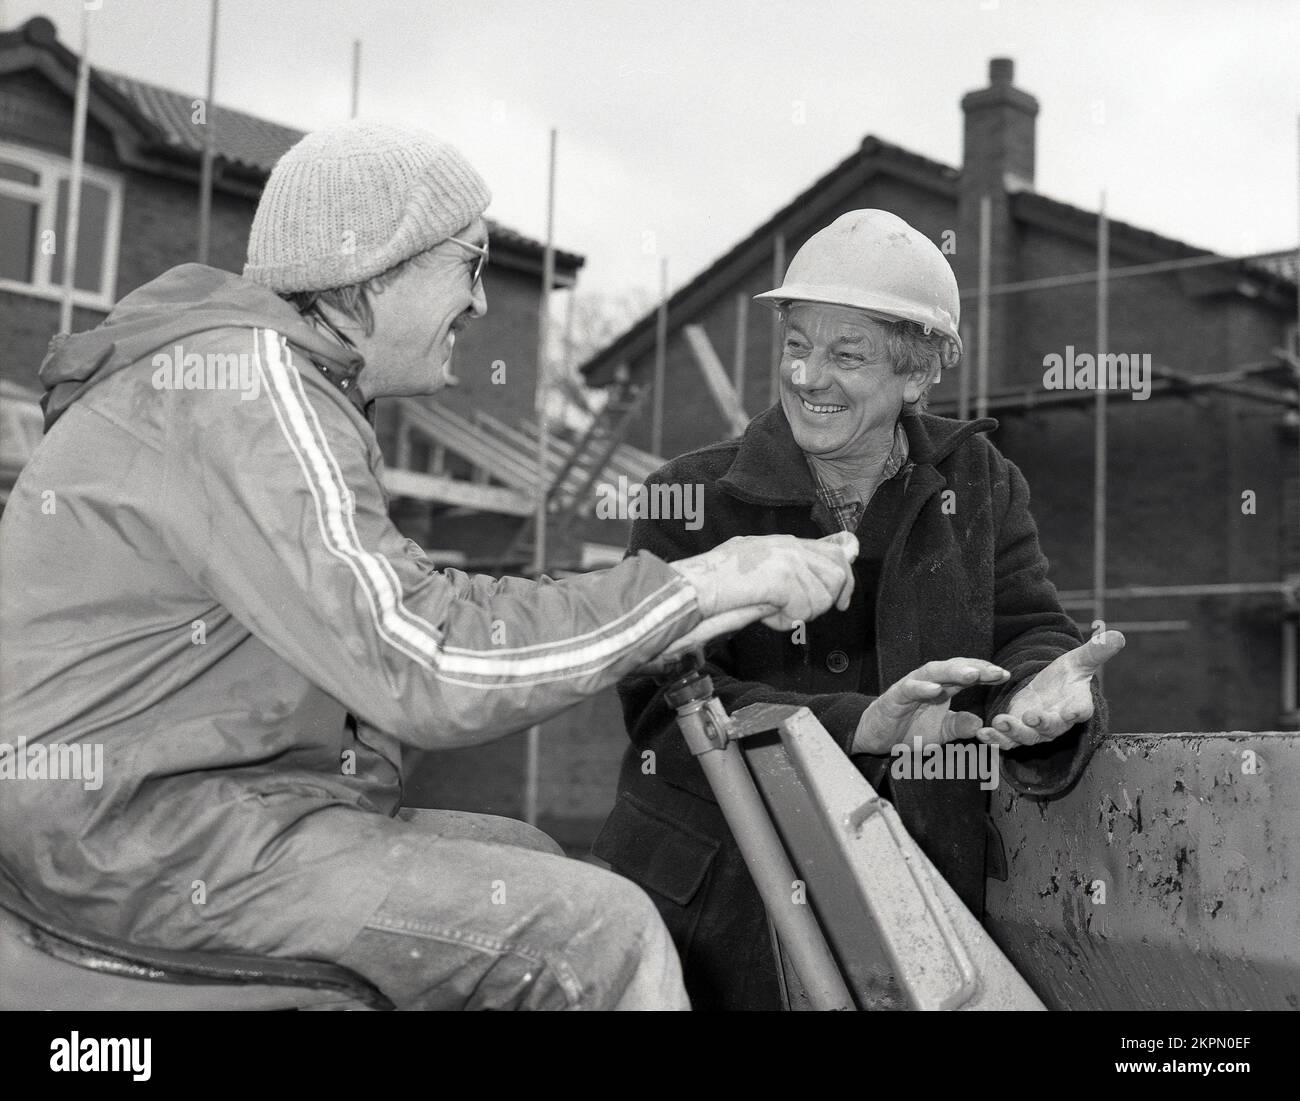 1980s, dos constructores en obra, teniendo una conversación y una risa, uno usando un casco, el otro un sombrero de bolitas, que está sentado en un dumper de la punta, un vehículo de la construcción que es un tipo de carro del dumper, Inglaterra, Reino Unido. Foto de stock